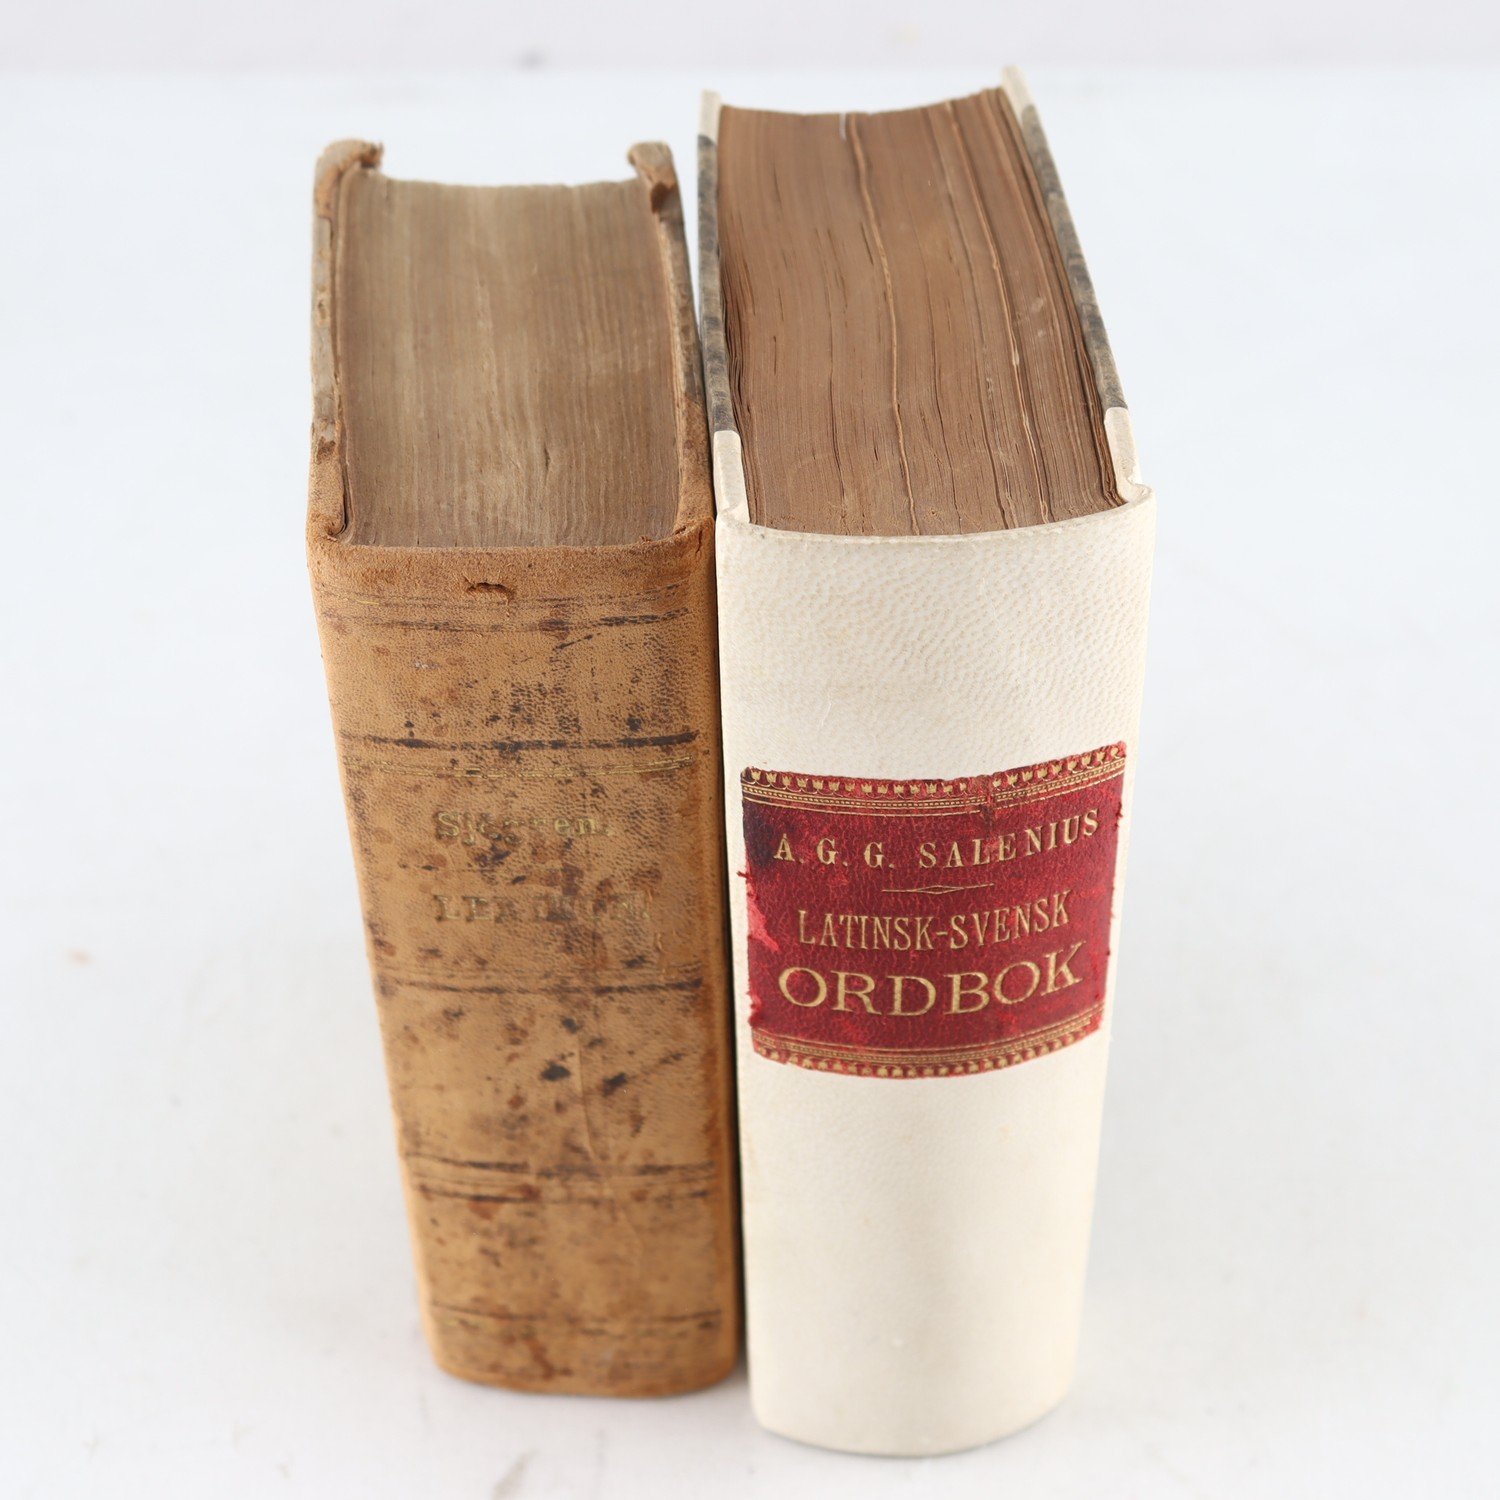 Två latinsk-svenska ordböcker (1832 & 1873)